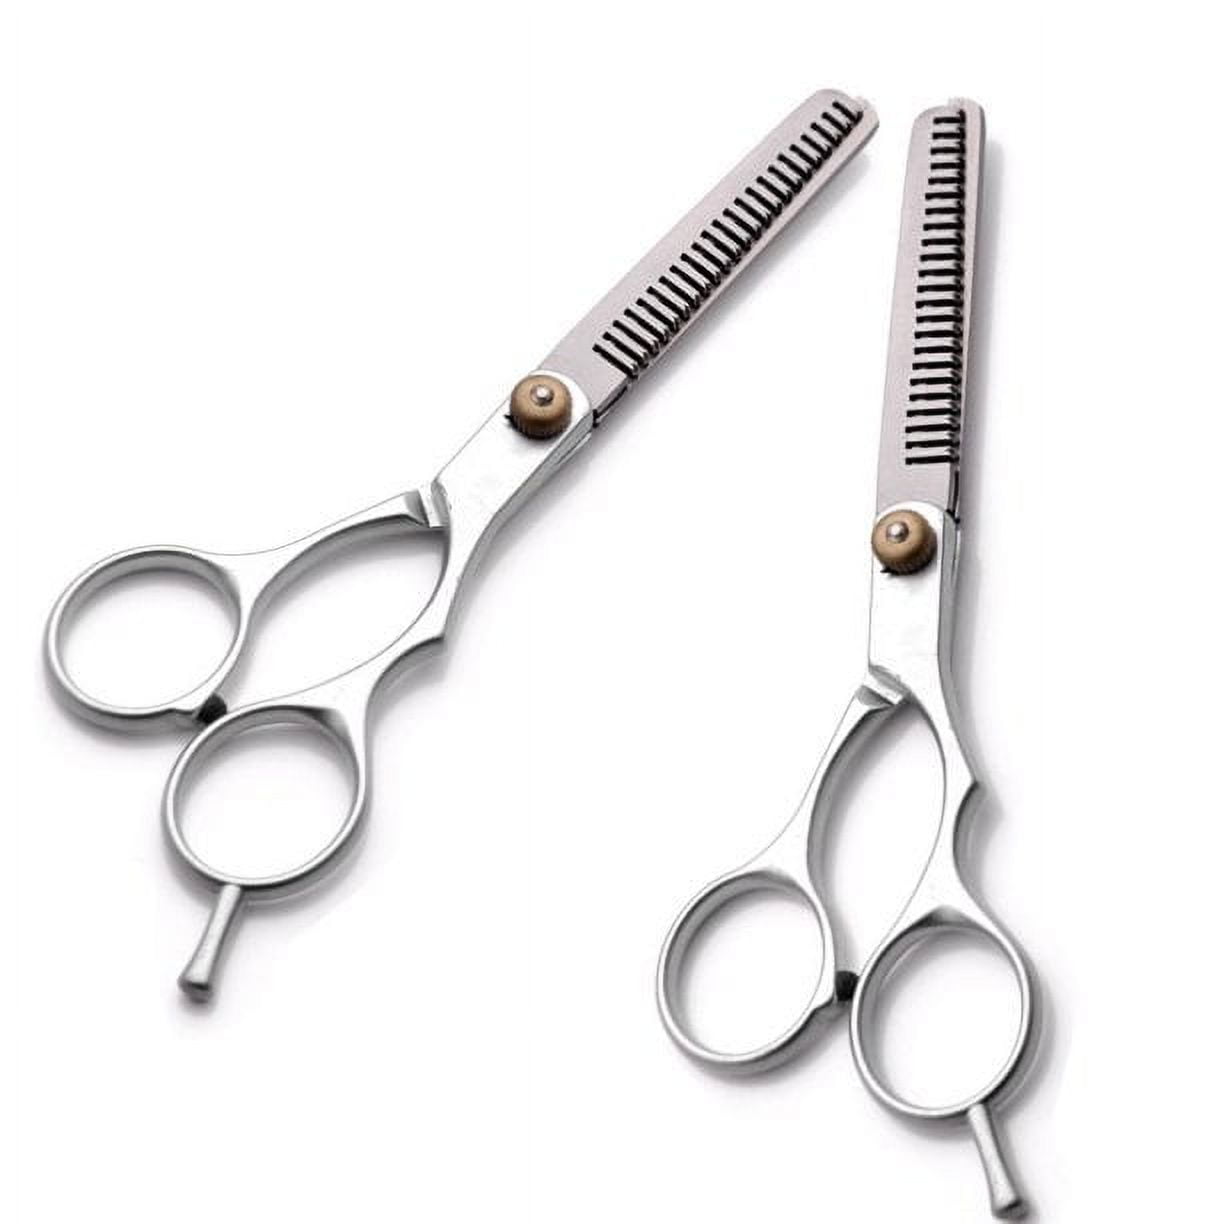 Zebra 7 Inch Length Hair Cutting Scissors - Japanese Stainless Steel 440C  Hairdressing Barber Cosmetologist Salon Shears Razor Sharp Edge Adjustable